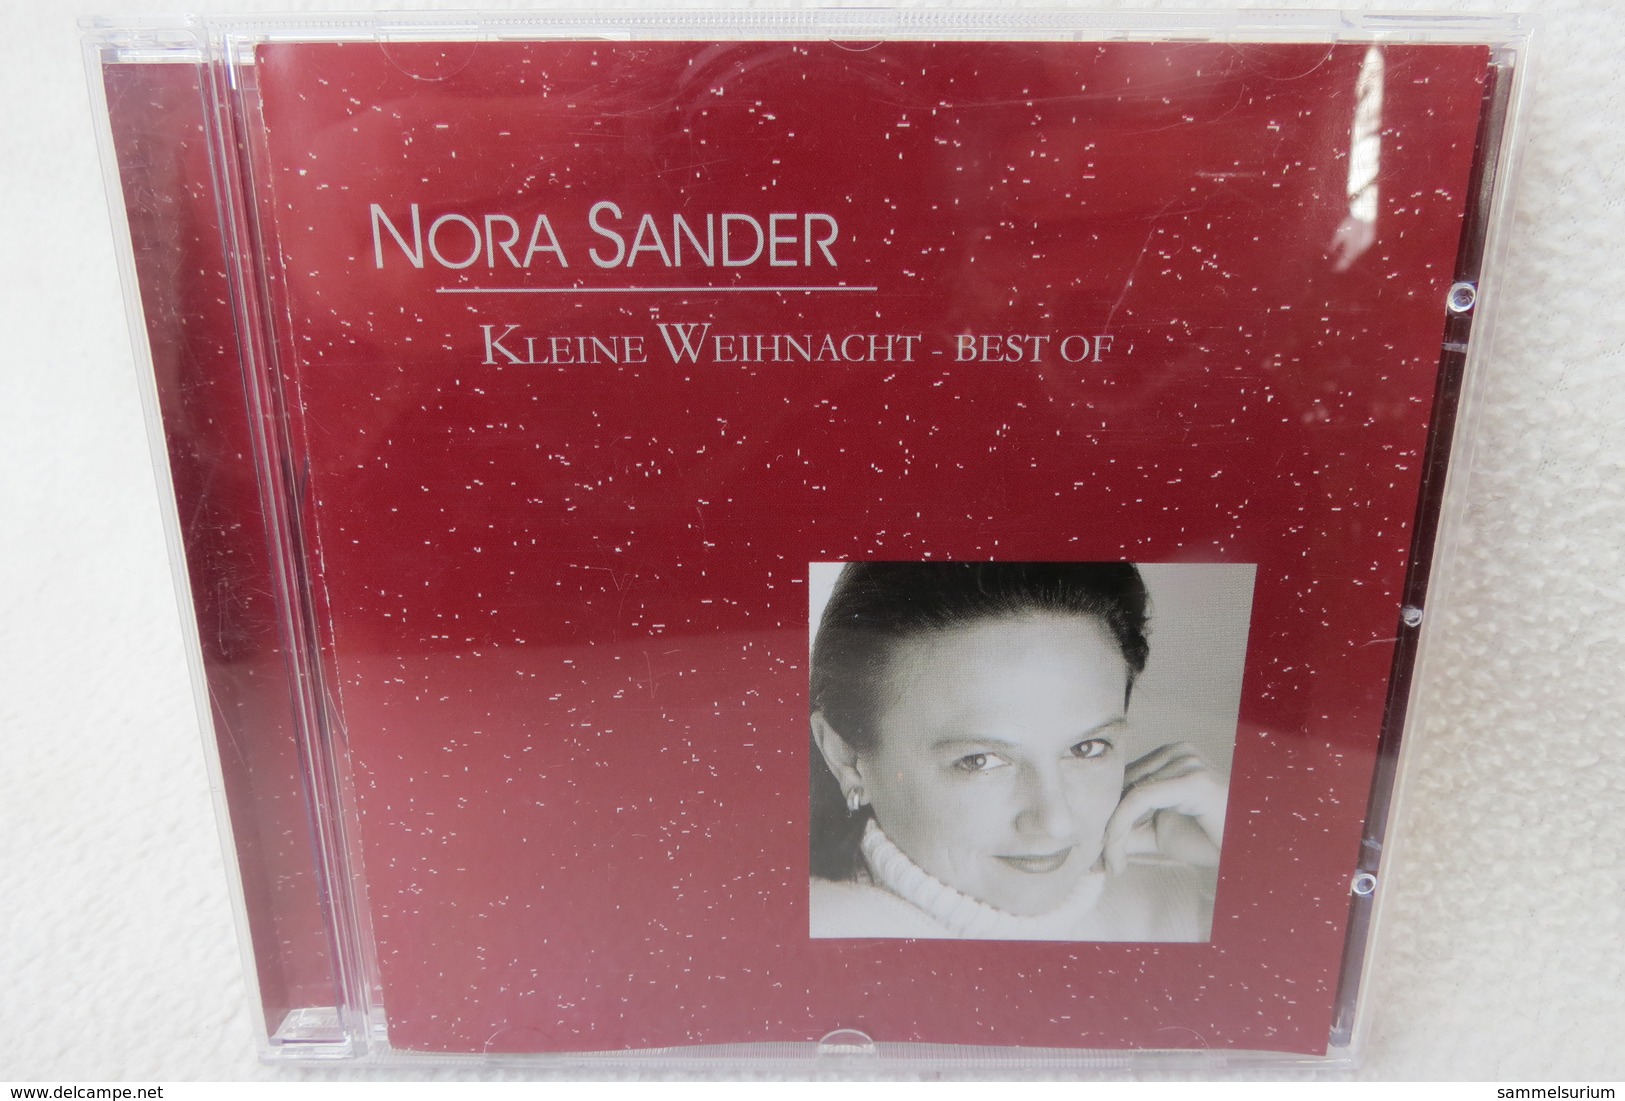 CD "Nora Sander" Kleine Weihnacht - Best Of - Weihnachtslieder